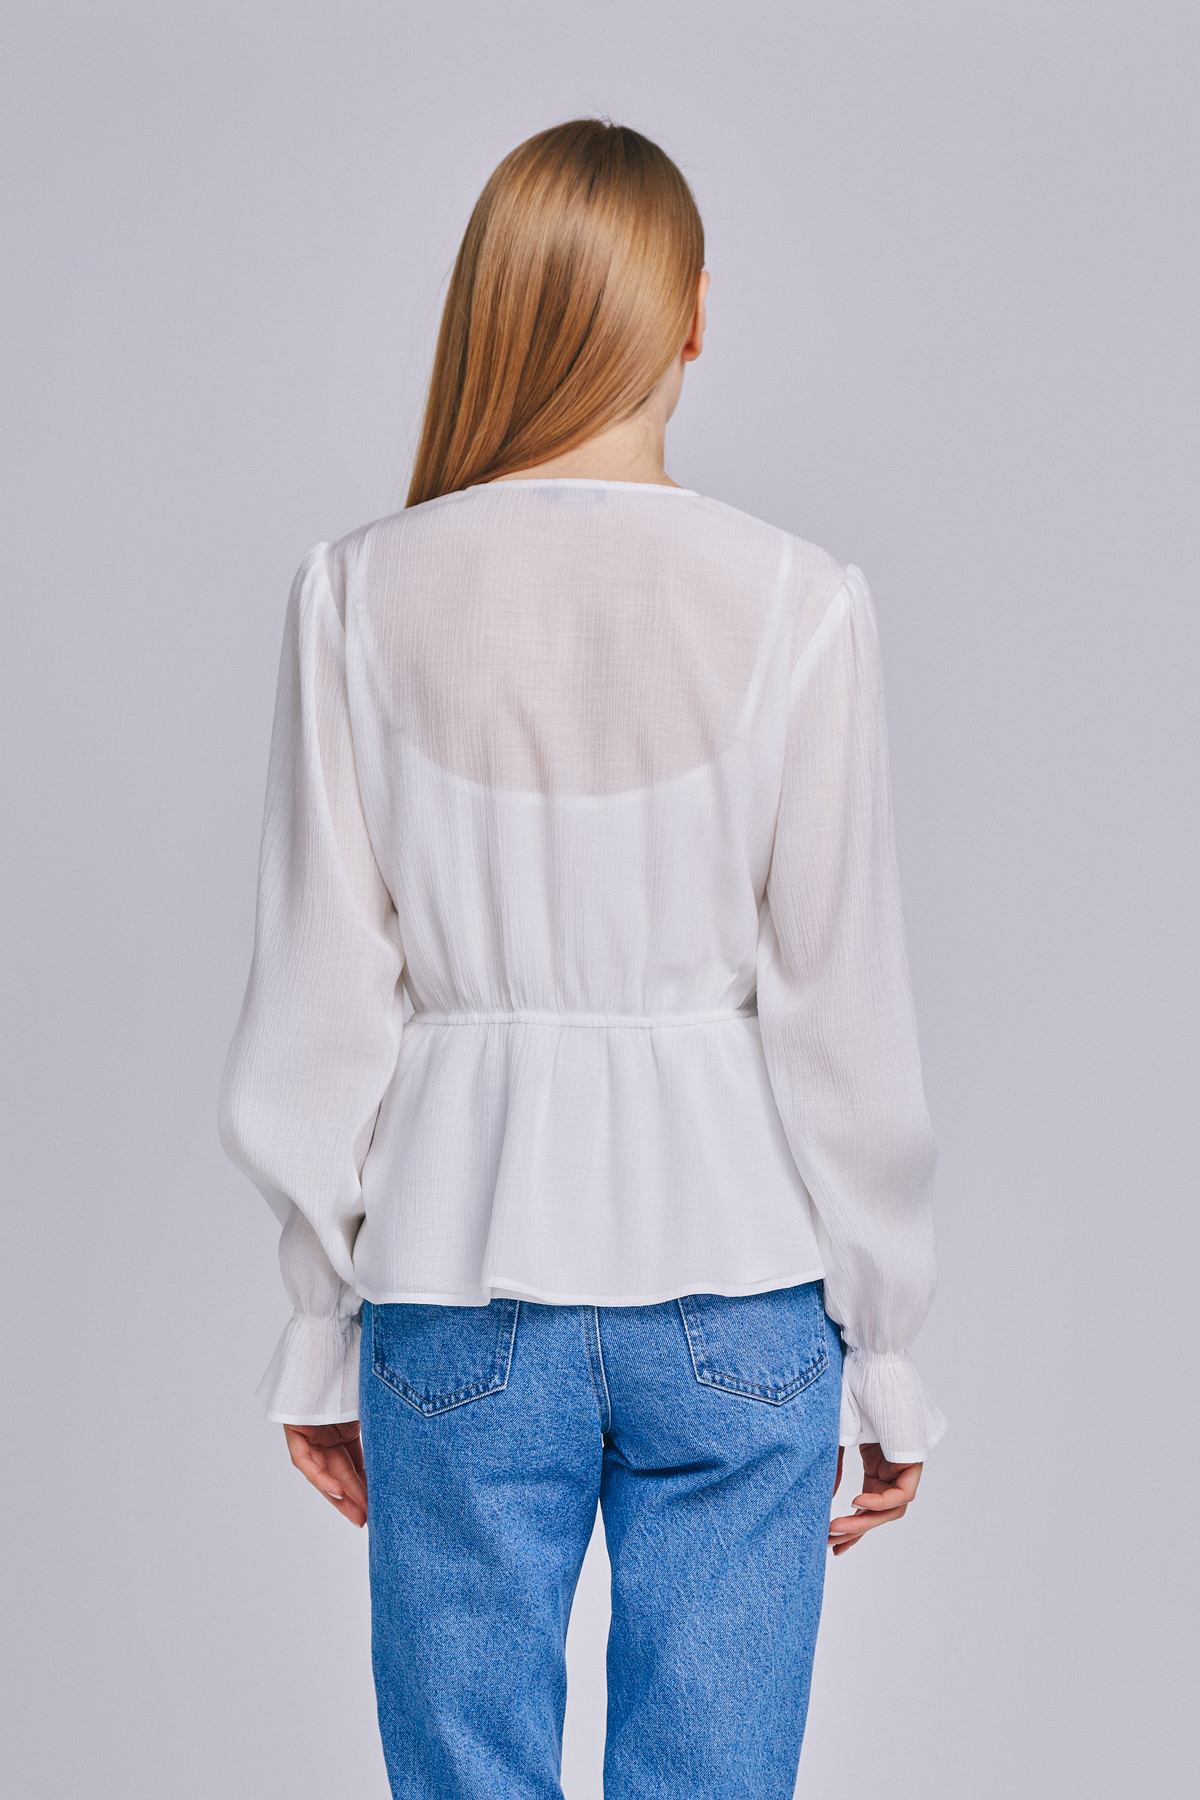 White chiffon blouse with a lining T-shirt , photo 6